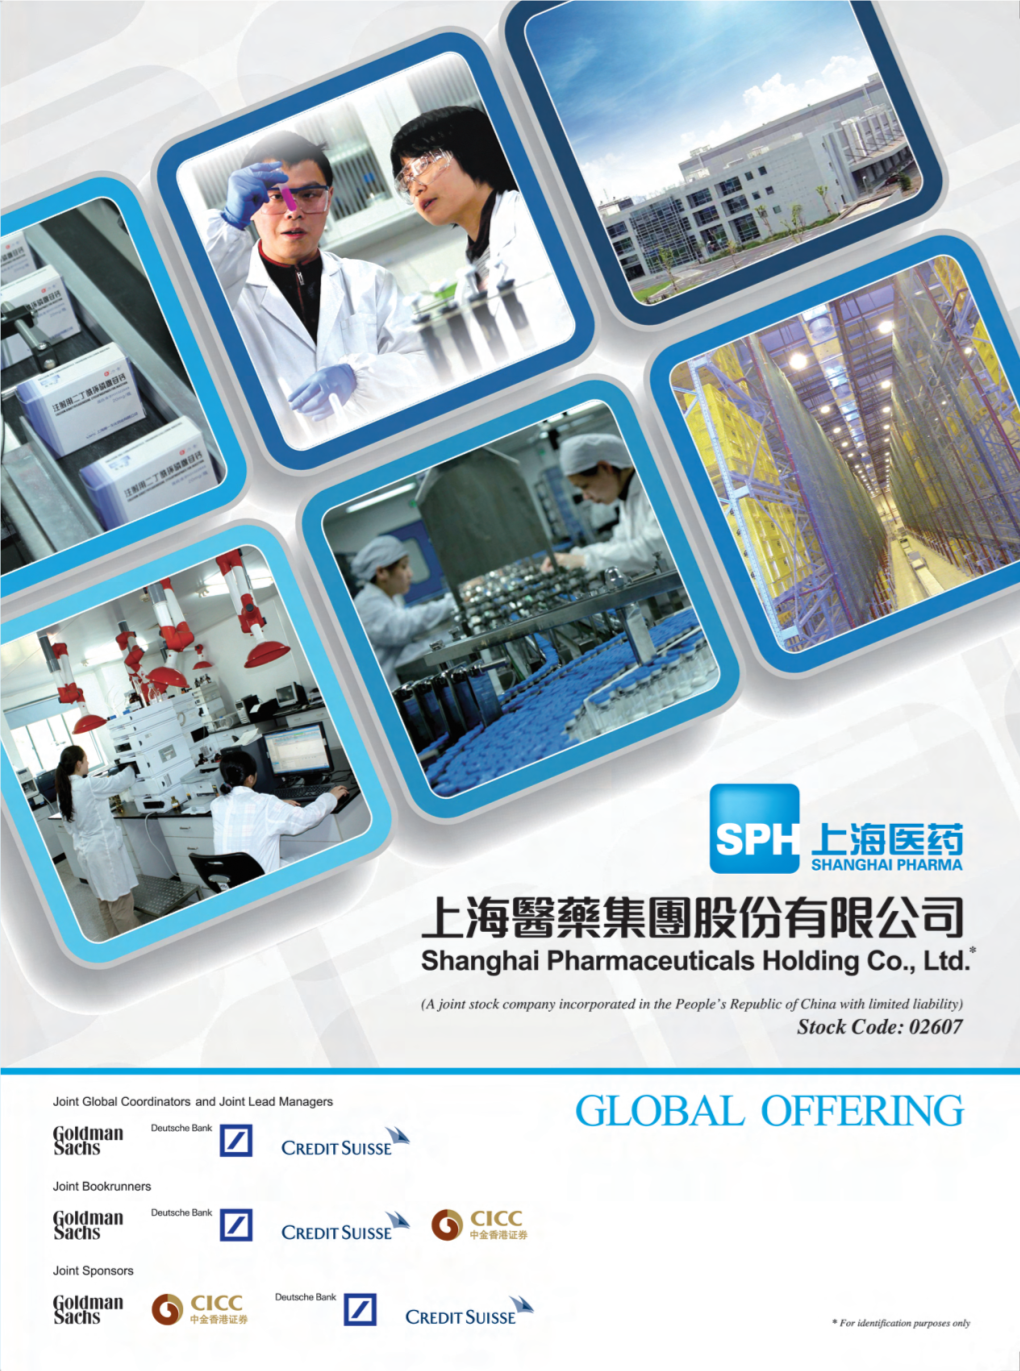 上海醫藥集團股份有限公司 Shanghai Pharmaceuticals Holding Co., Ltd